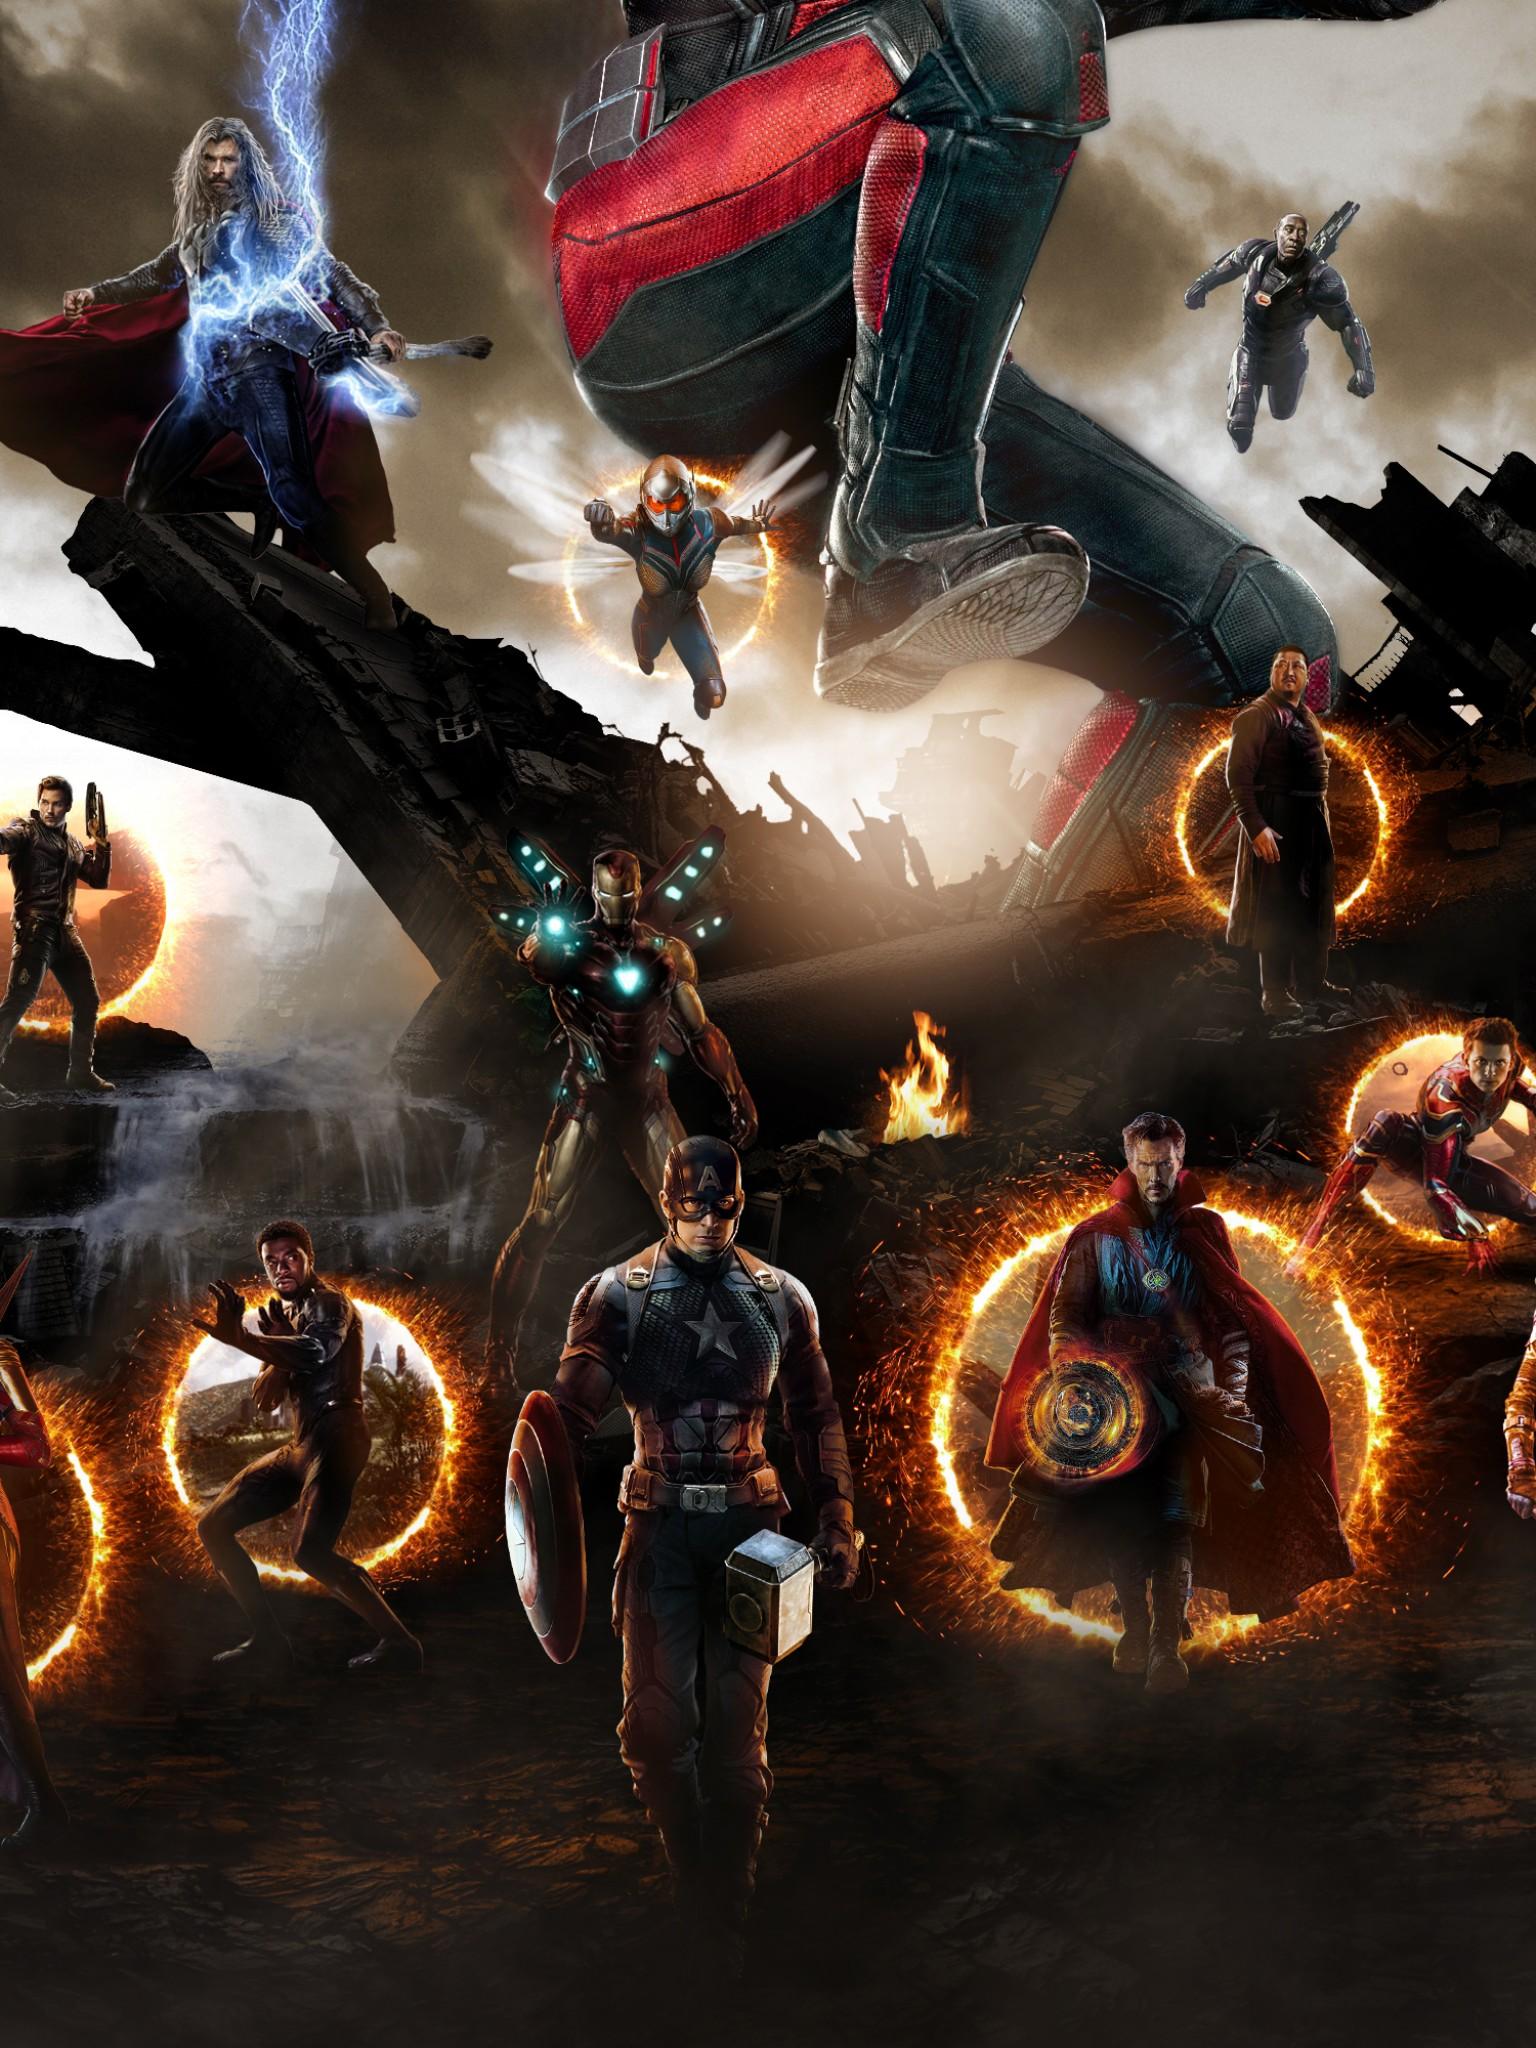 Wallpaper Avengers: Endgame, Final battle, 4K, Movies